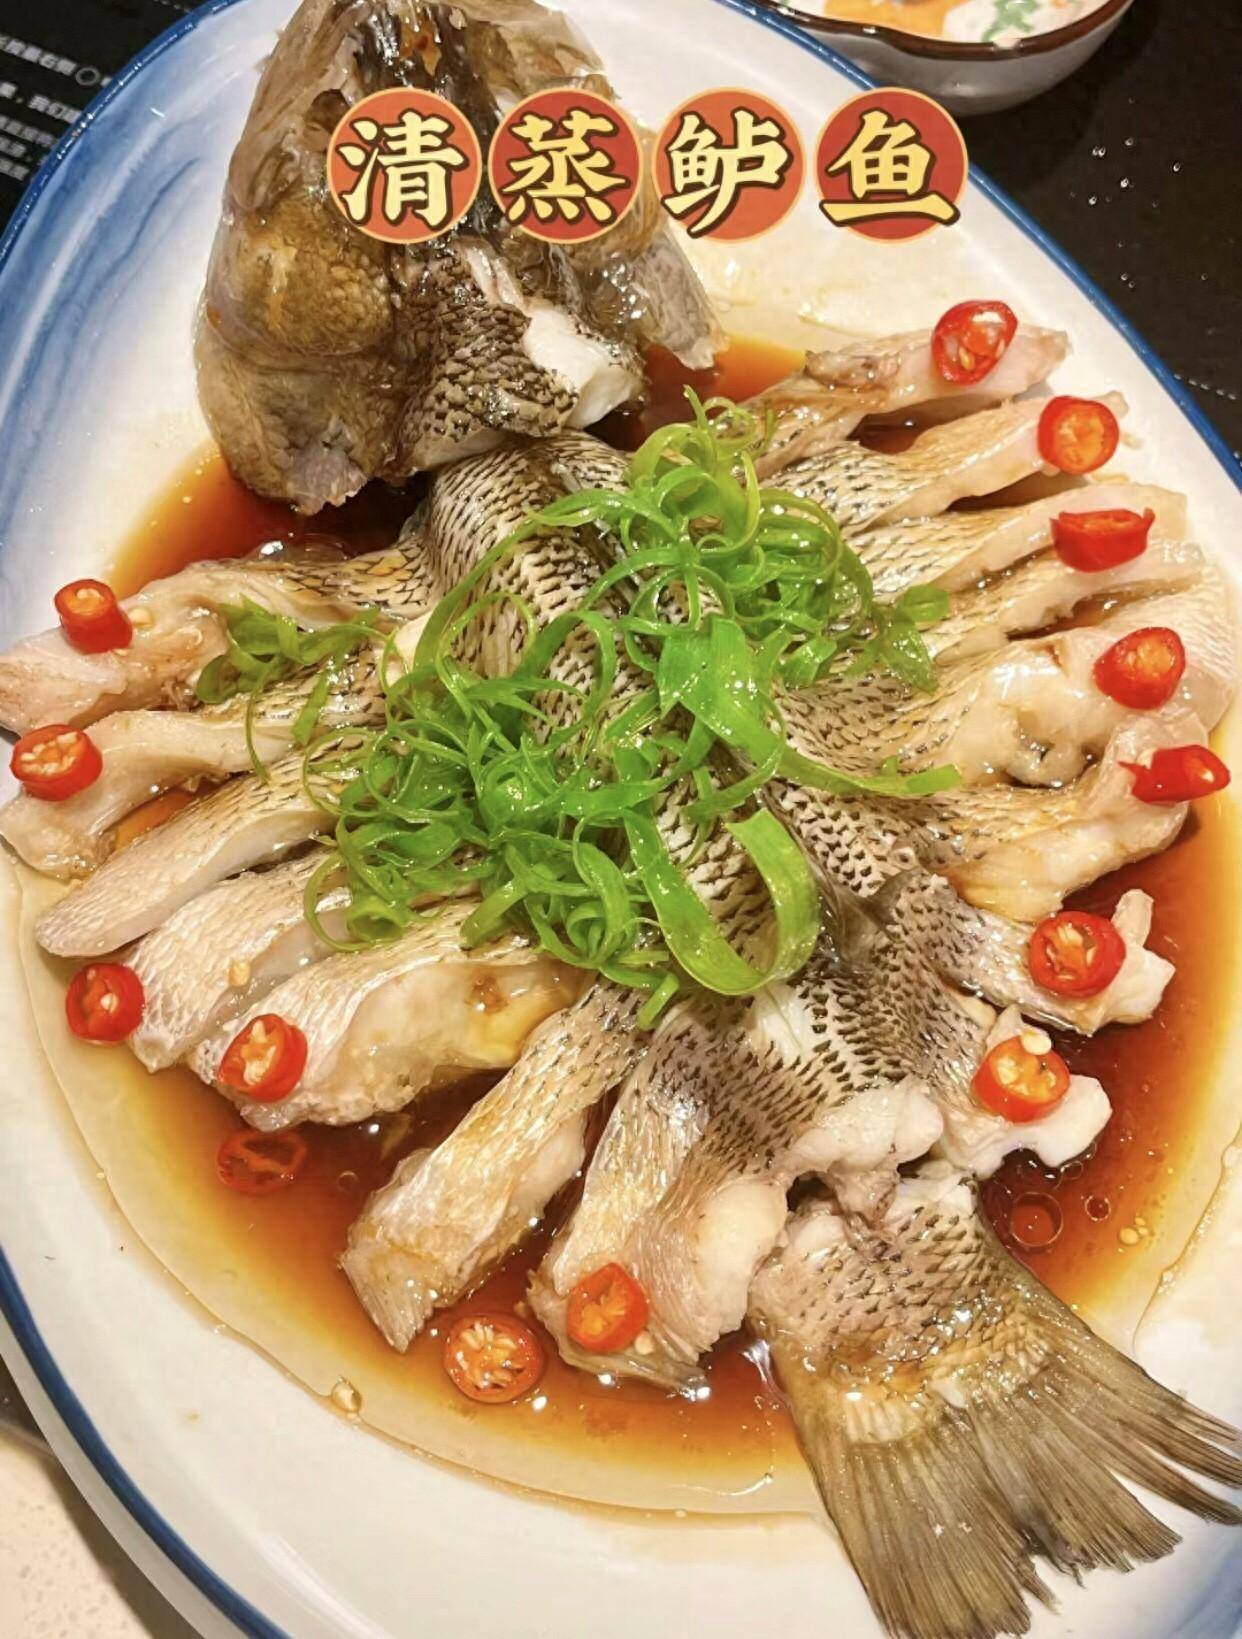 【清蒸鲈鱼——寓意年年有余,寓意学业有成】鲈鱼肉质细嫩,味道鲜美